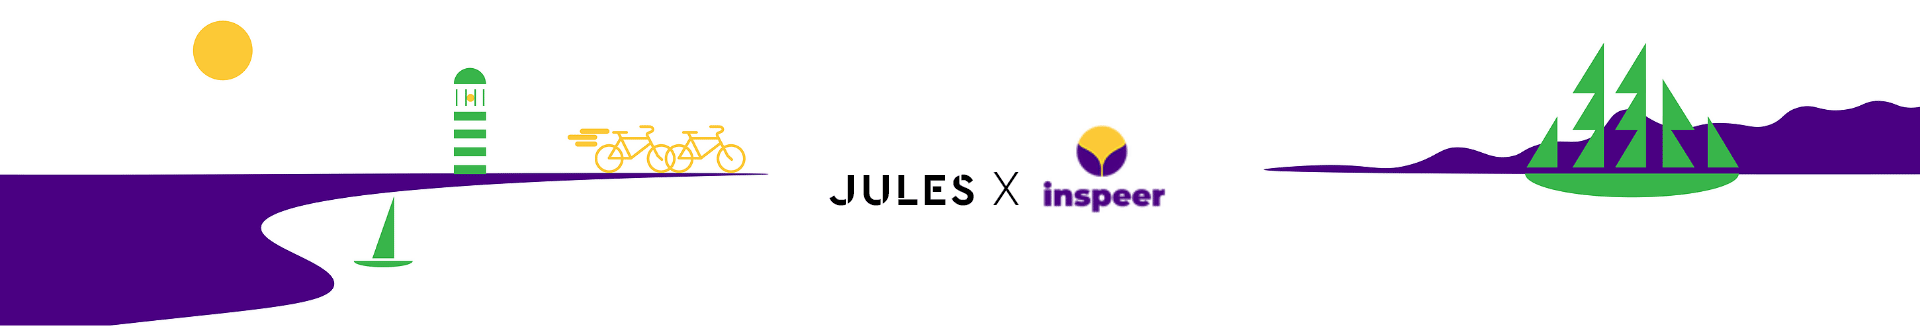 Jules X Inspeer